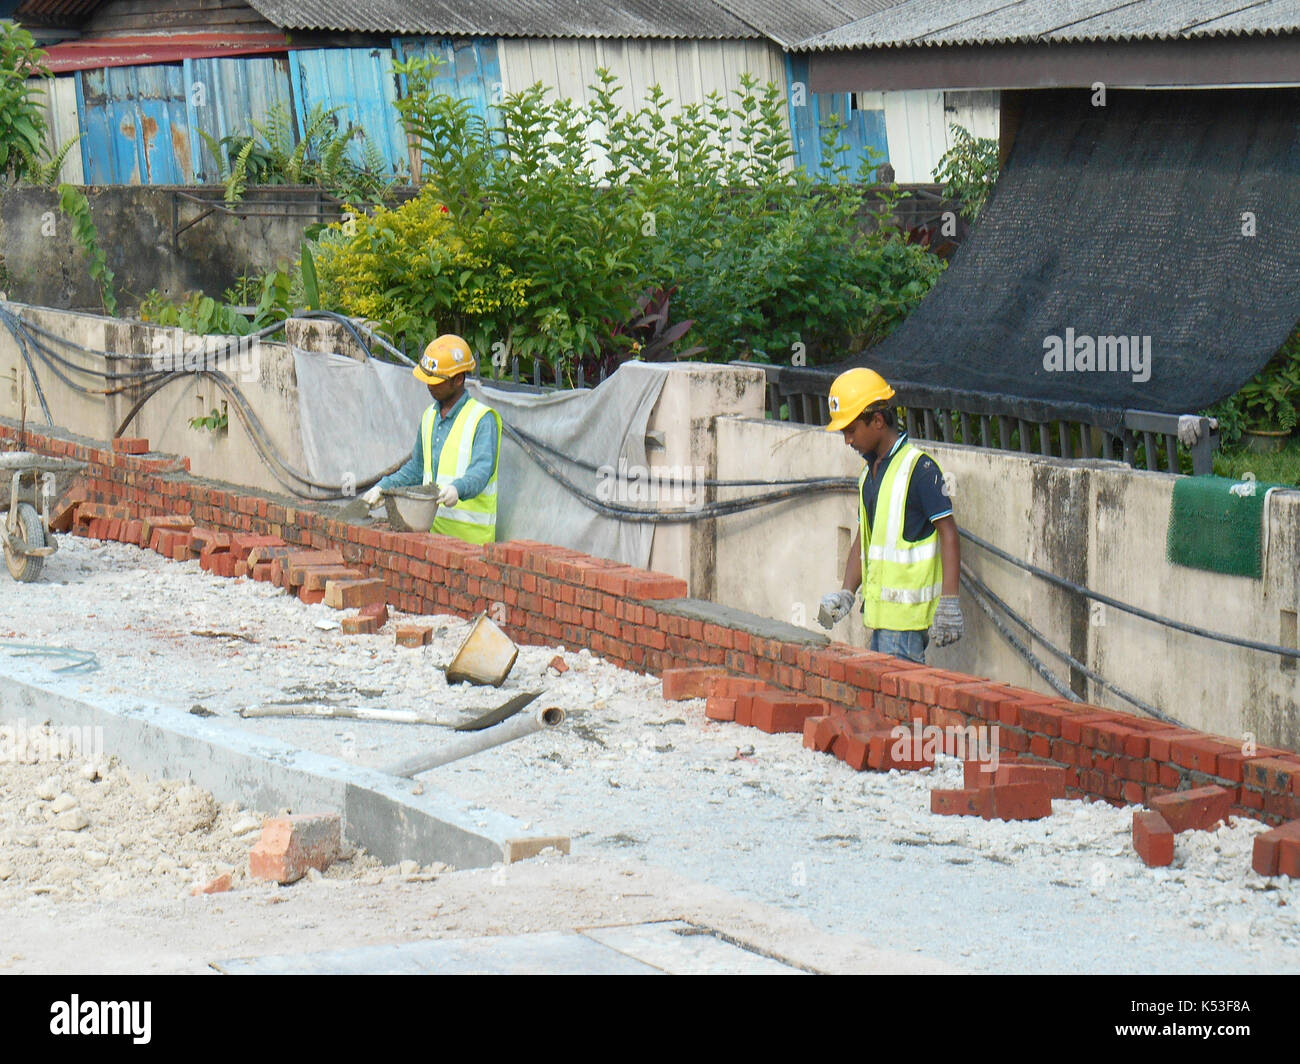 Selangor, Malasia - enero 15, 2017: albañil sentar los ladrillos y bloques apilados juntos con mortero de cemento para formar las paredes de la construcción Foto de stock